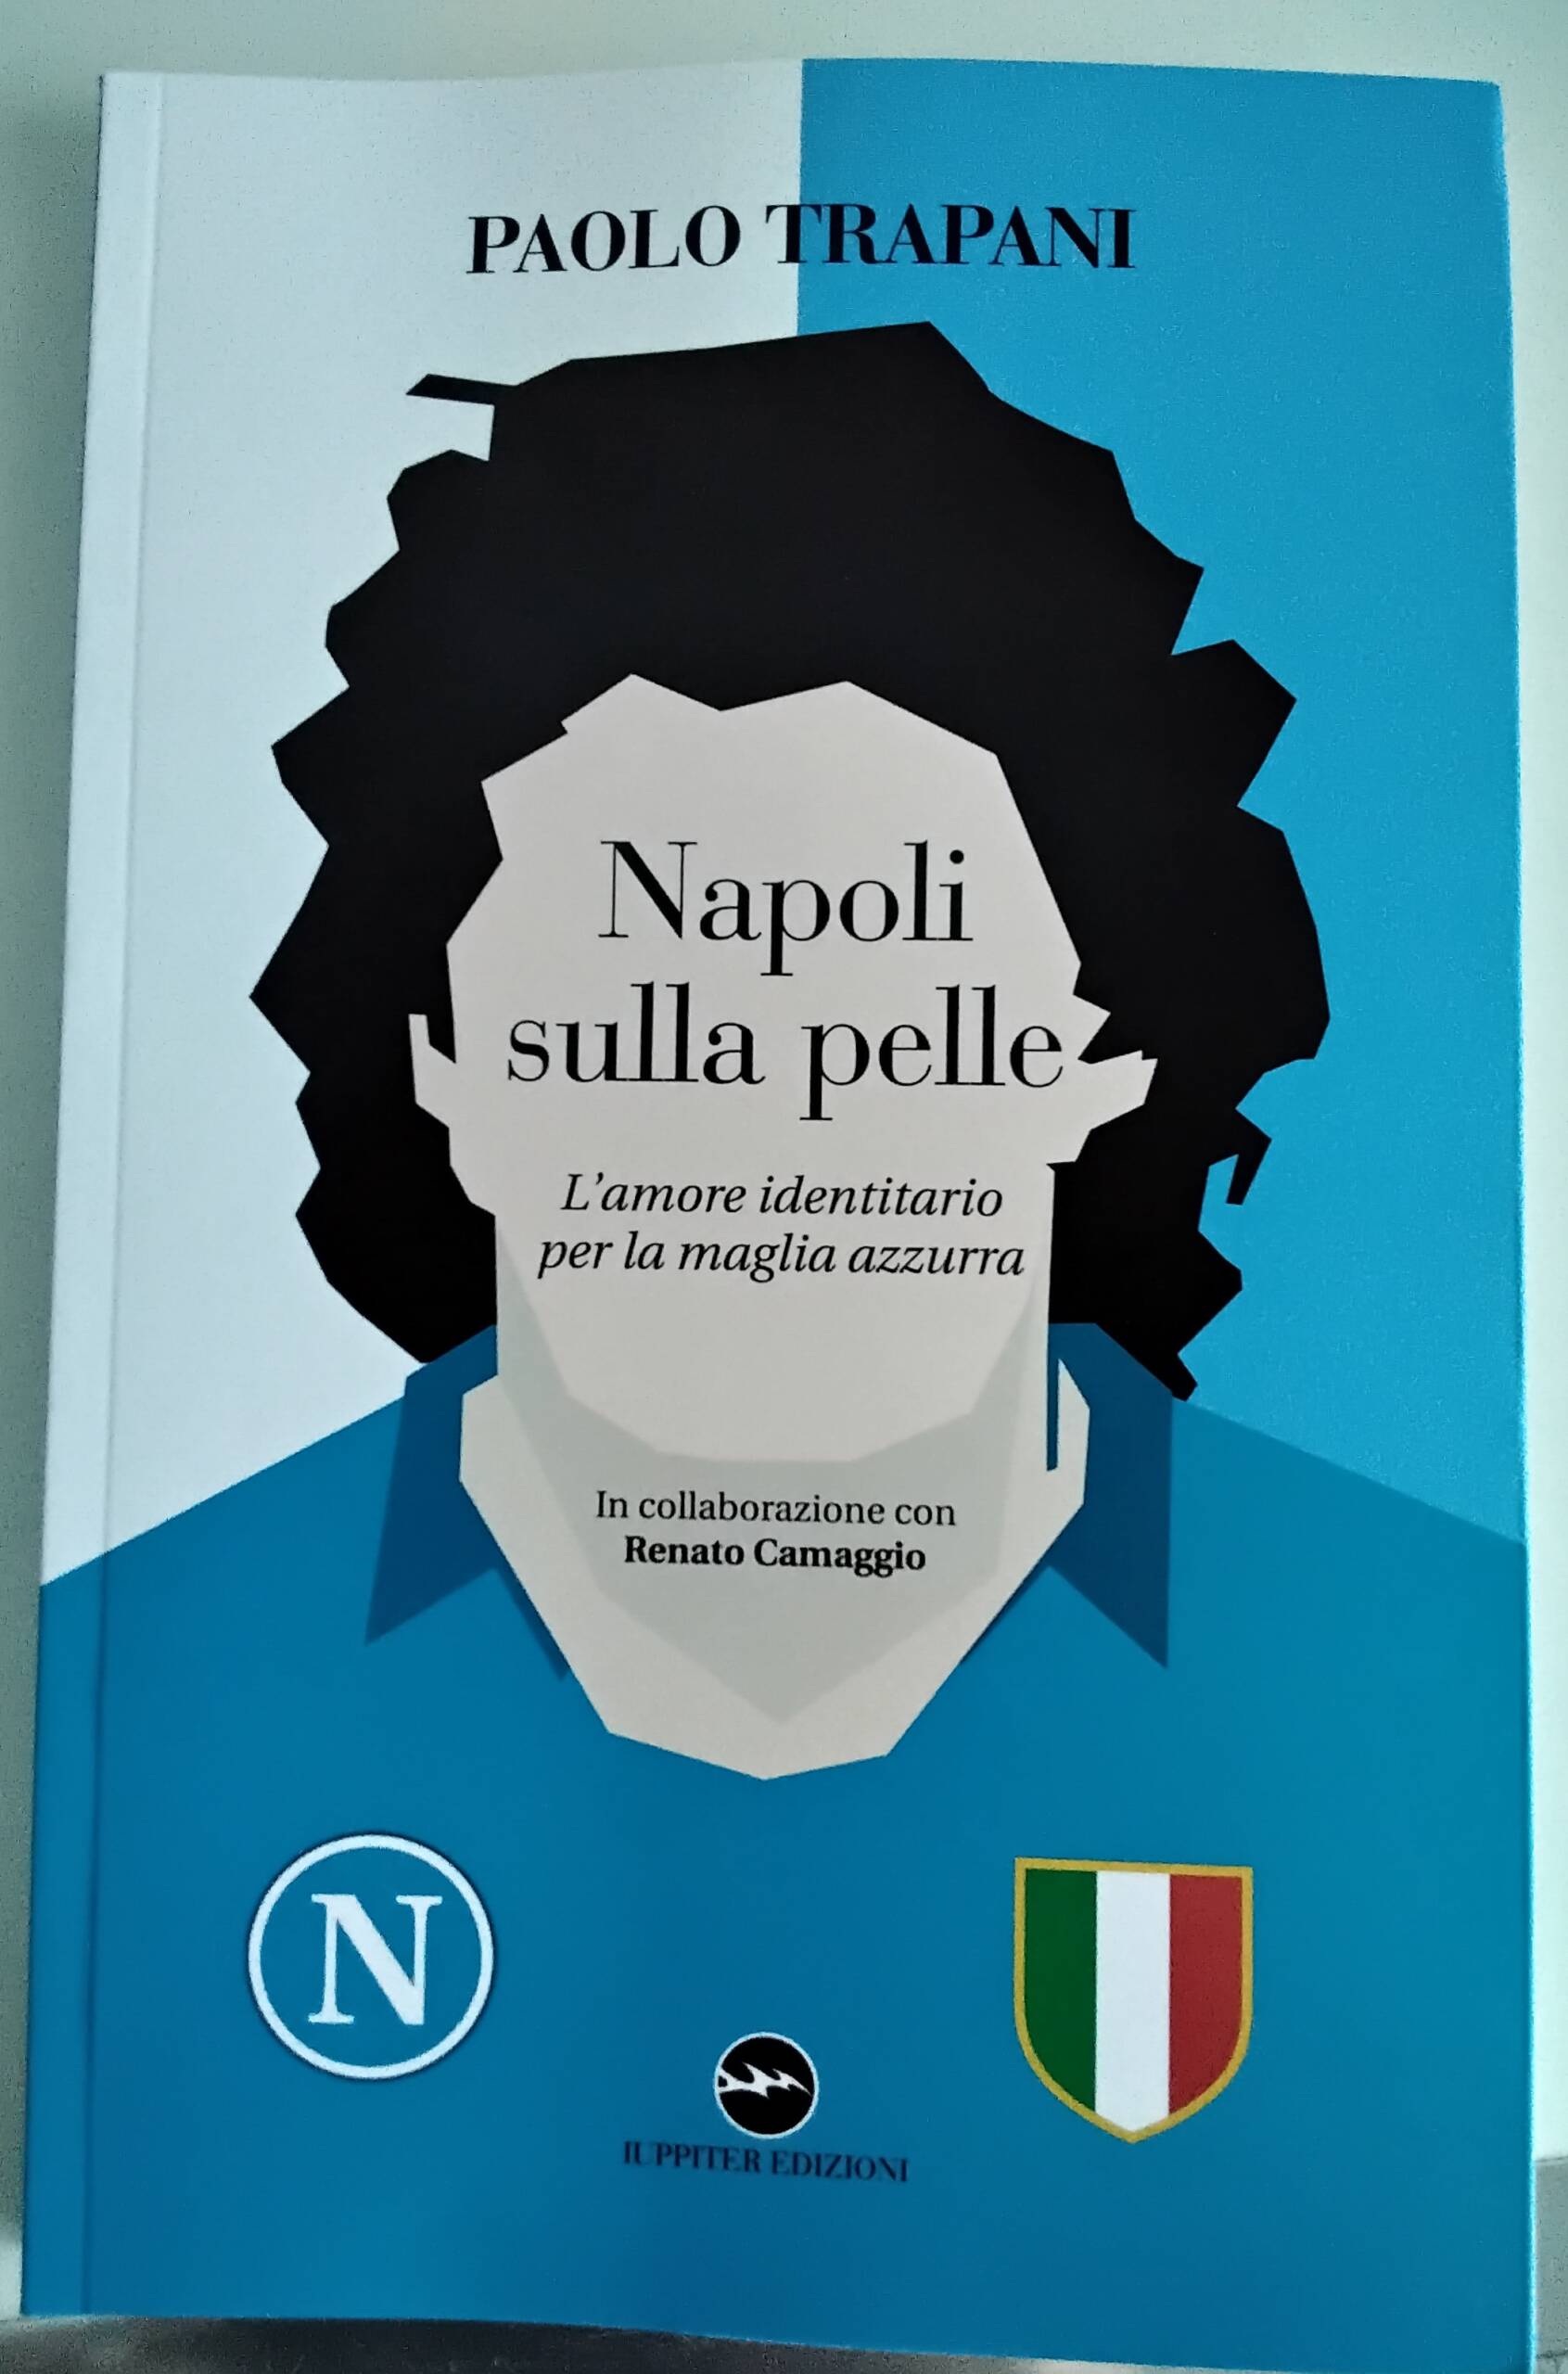 “Napoli sulla pelle”, il libro di Paolo Trapani dedicato alla maglia azzurra